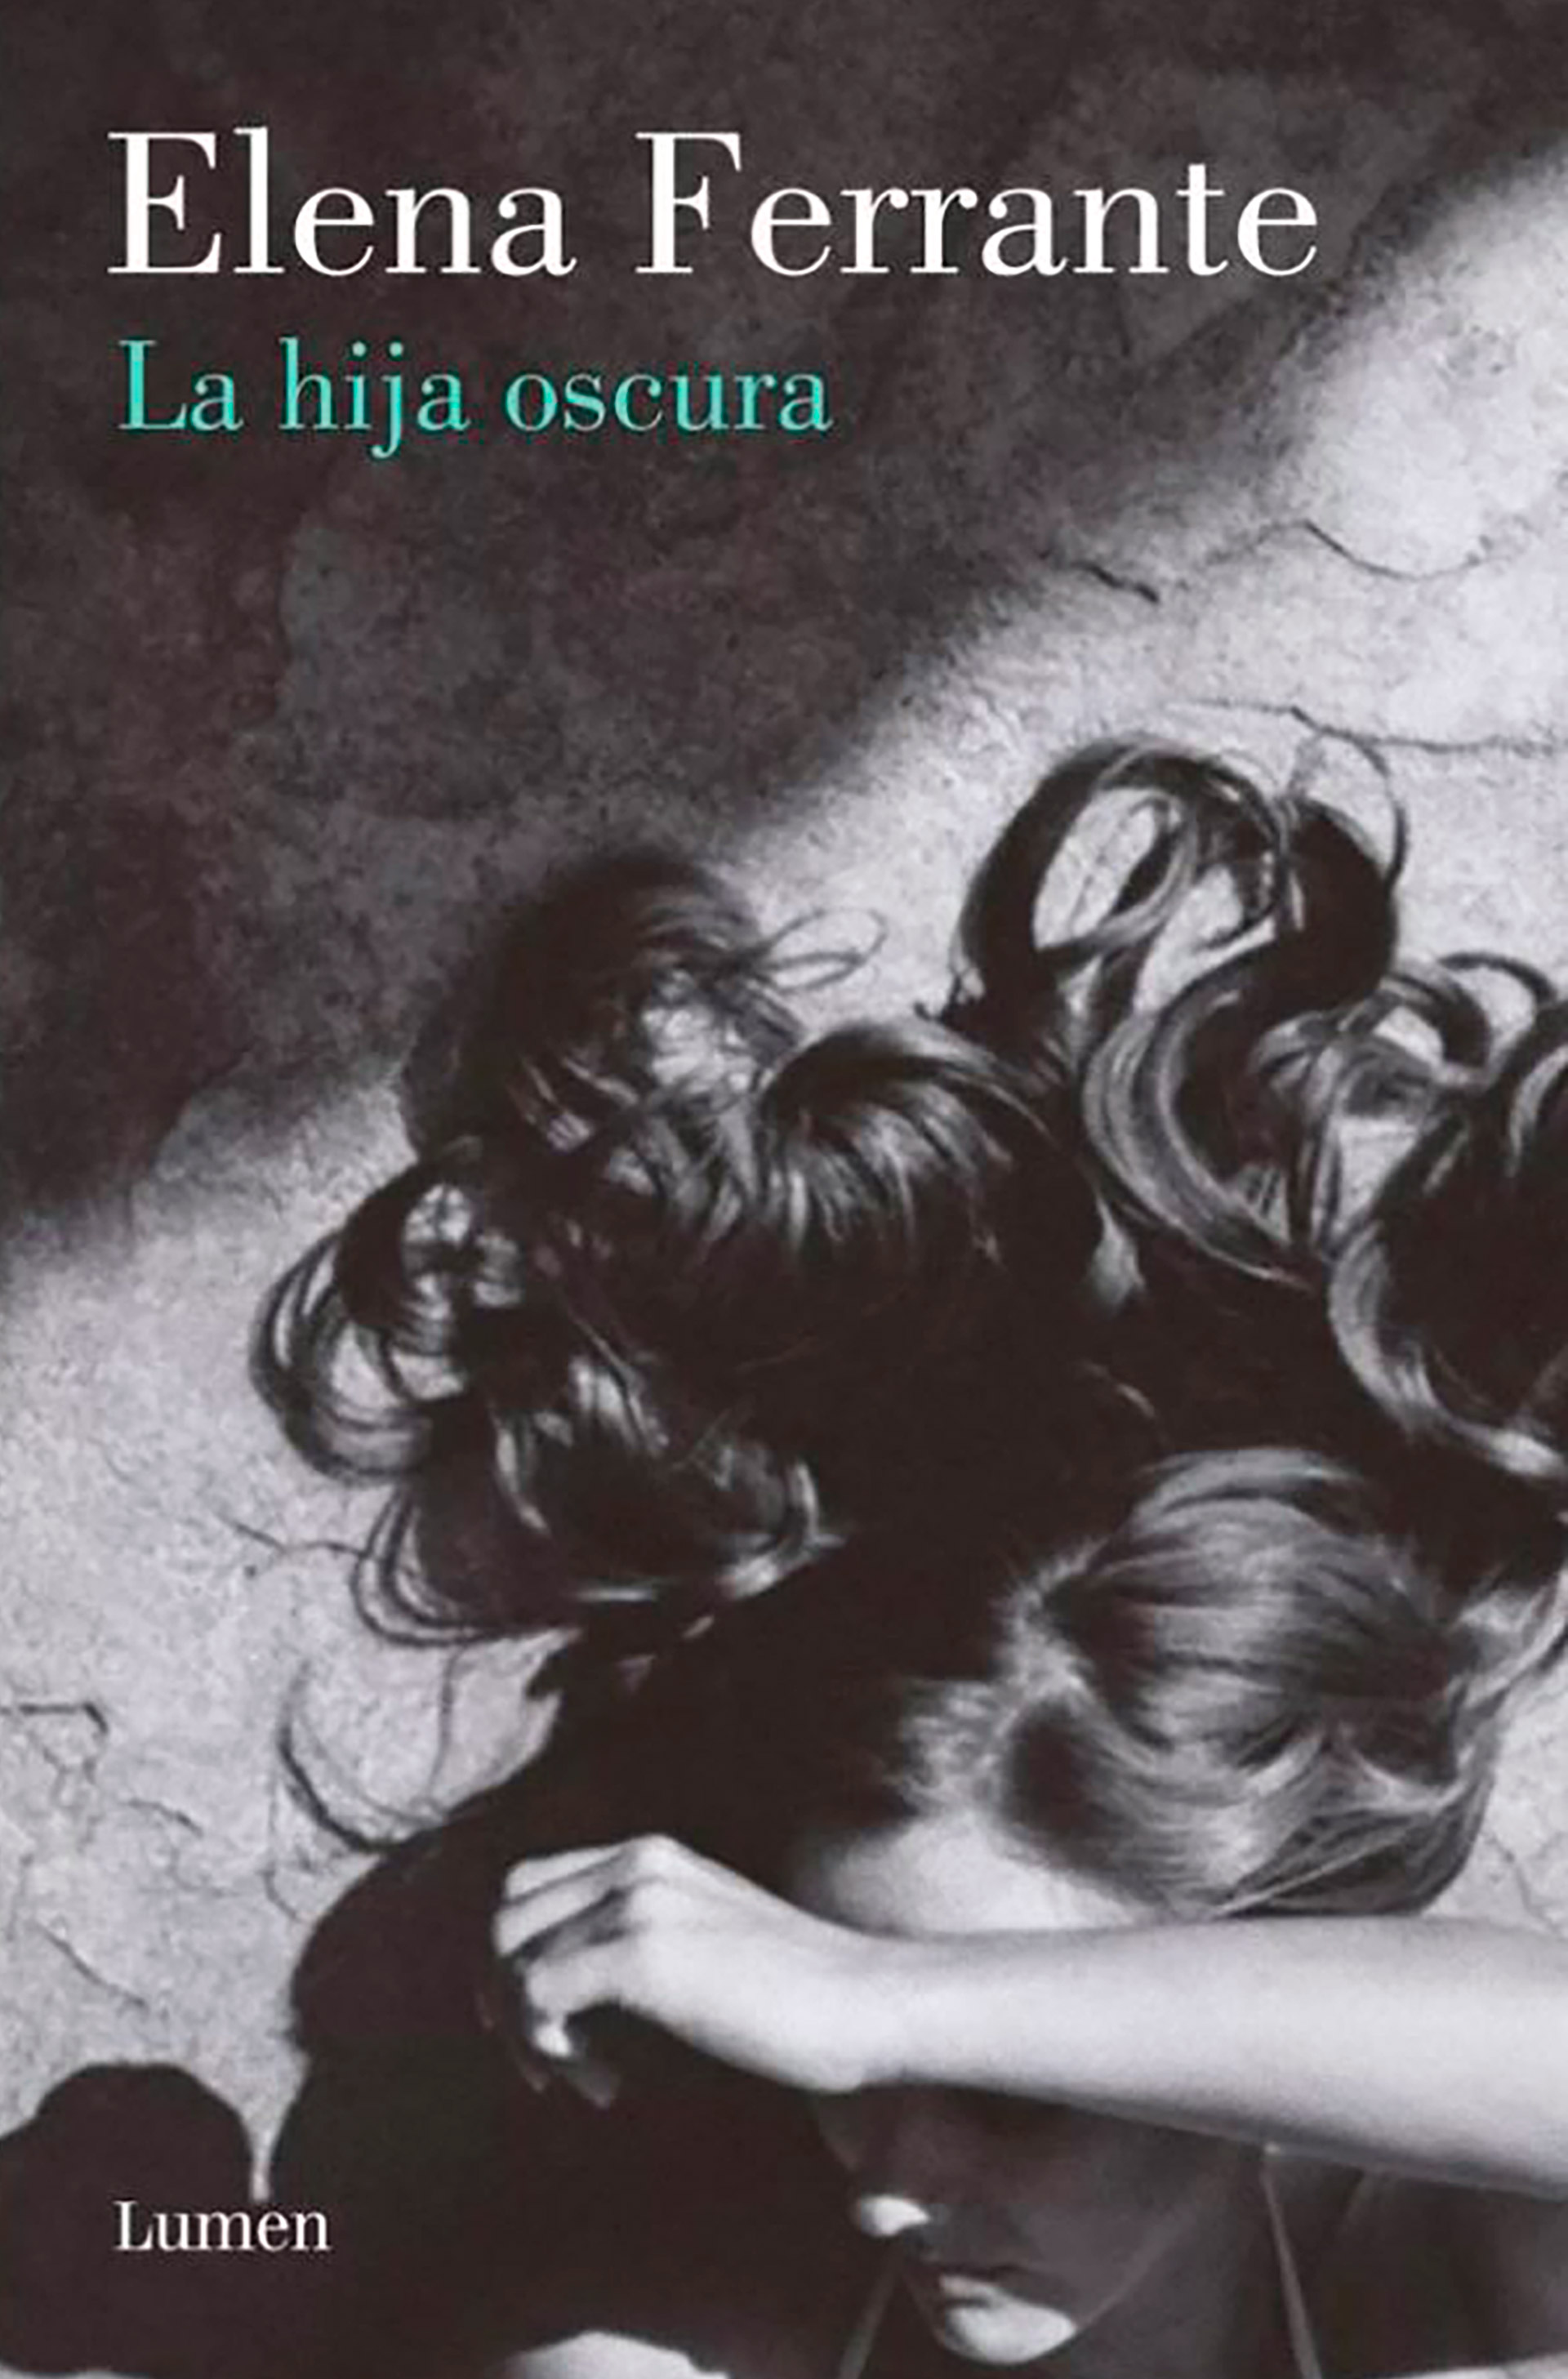 "La hija oscura", la novela de Elena Ferrante que Maggie Gyllenhaal llevó a la pantalla